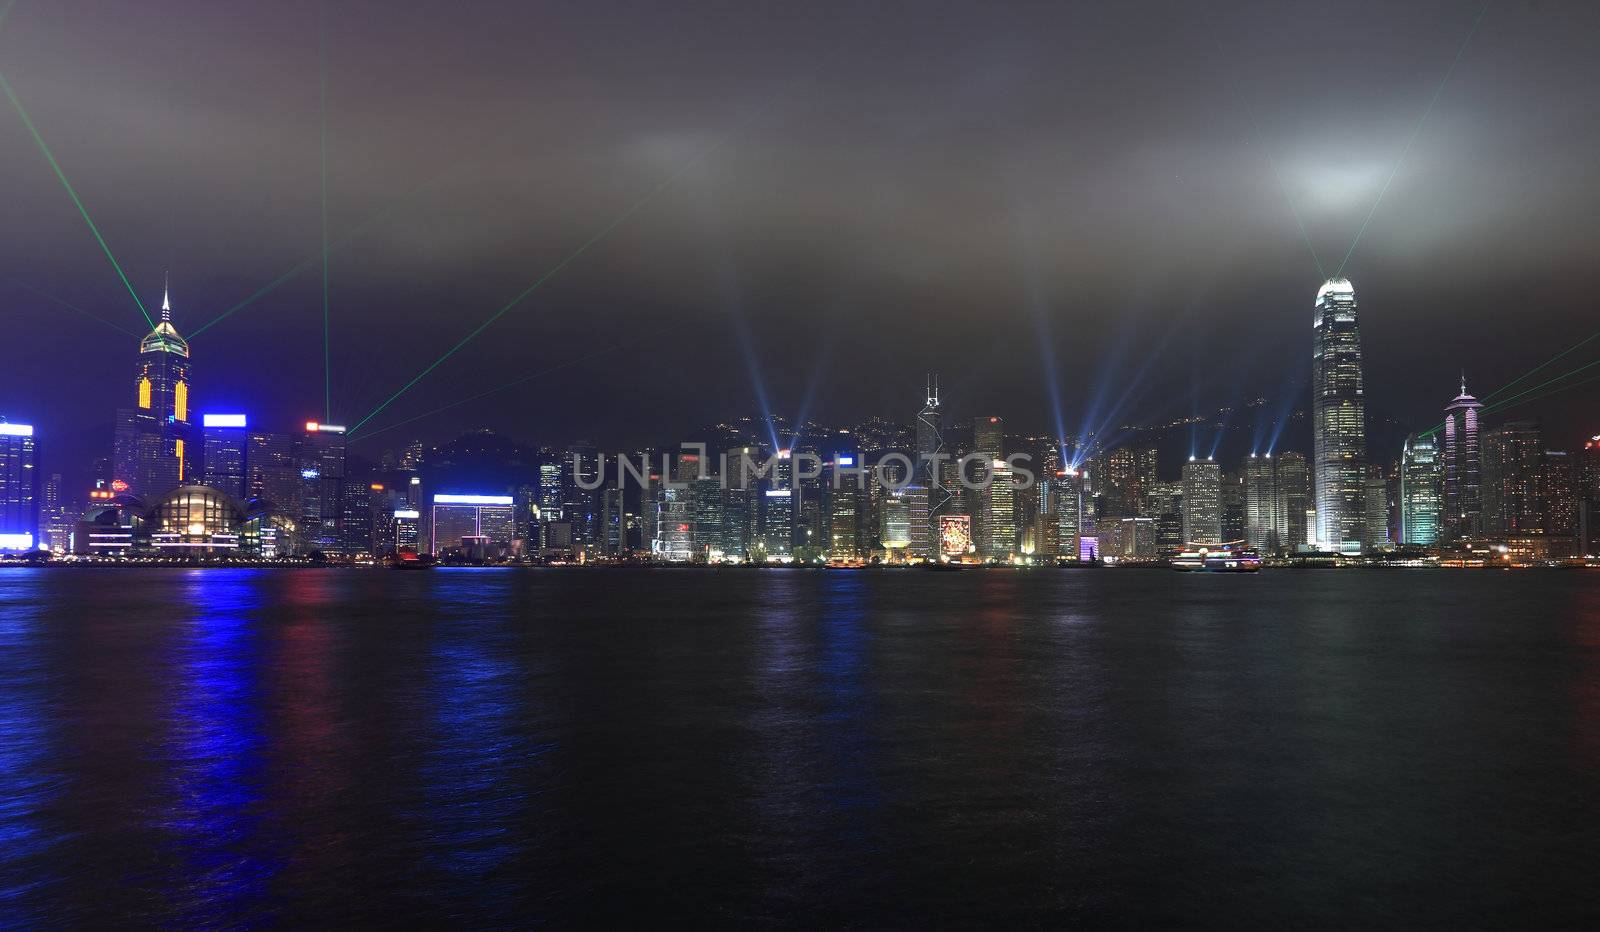 lights show in Hong Kong by leungchopan